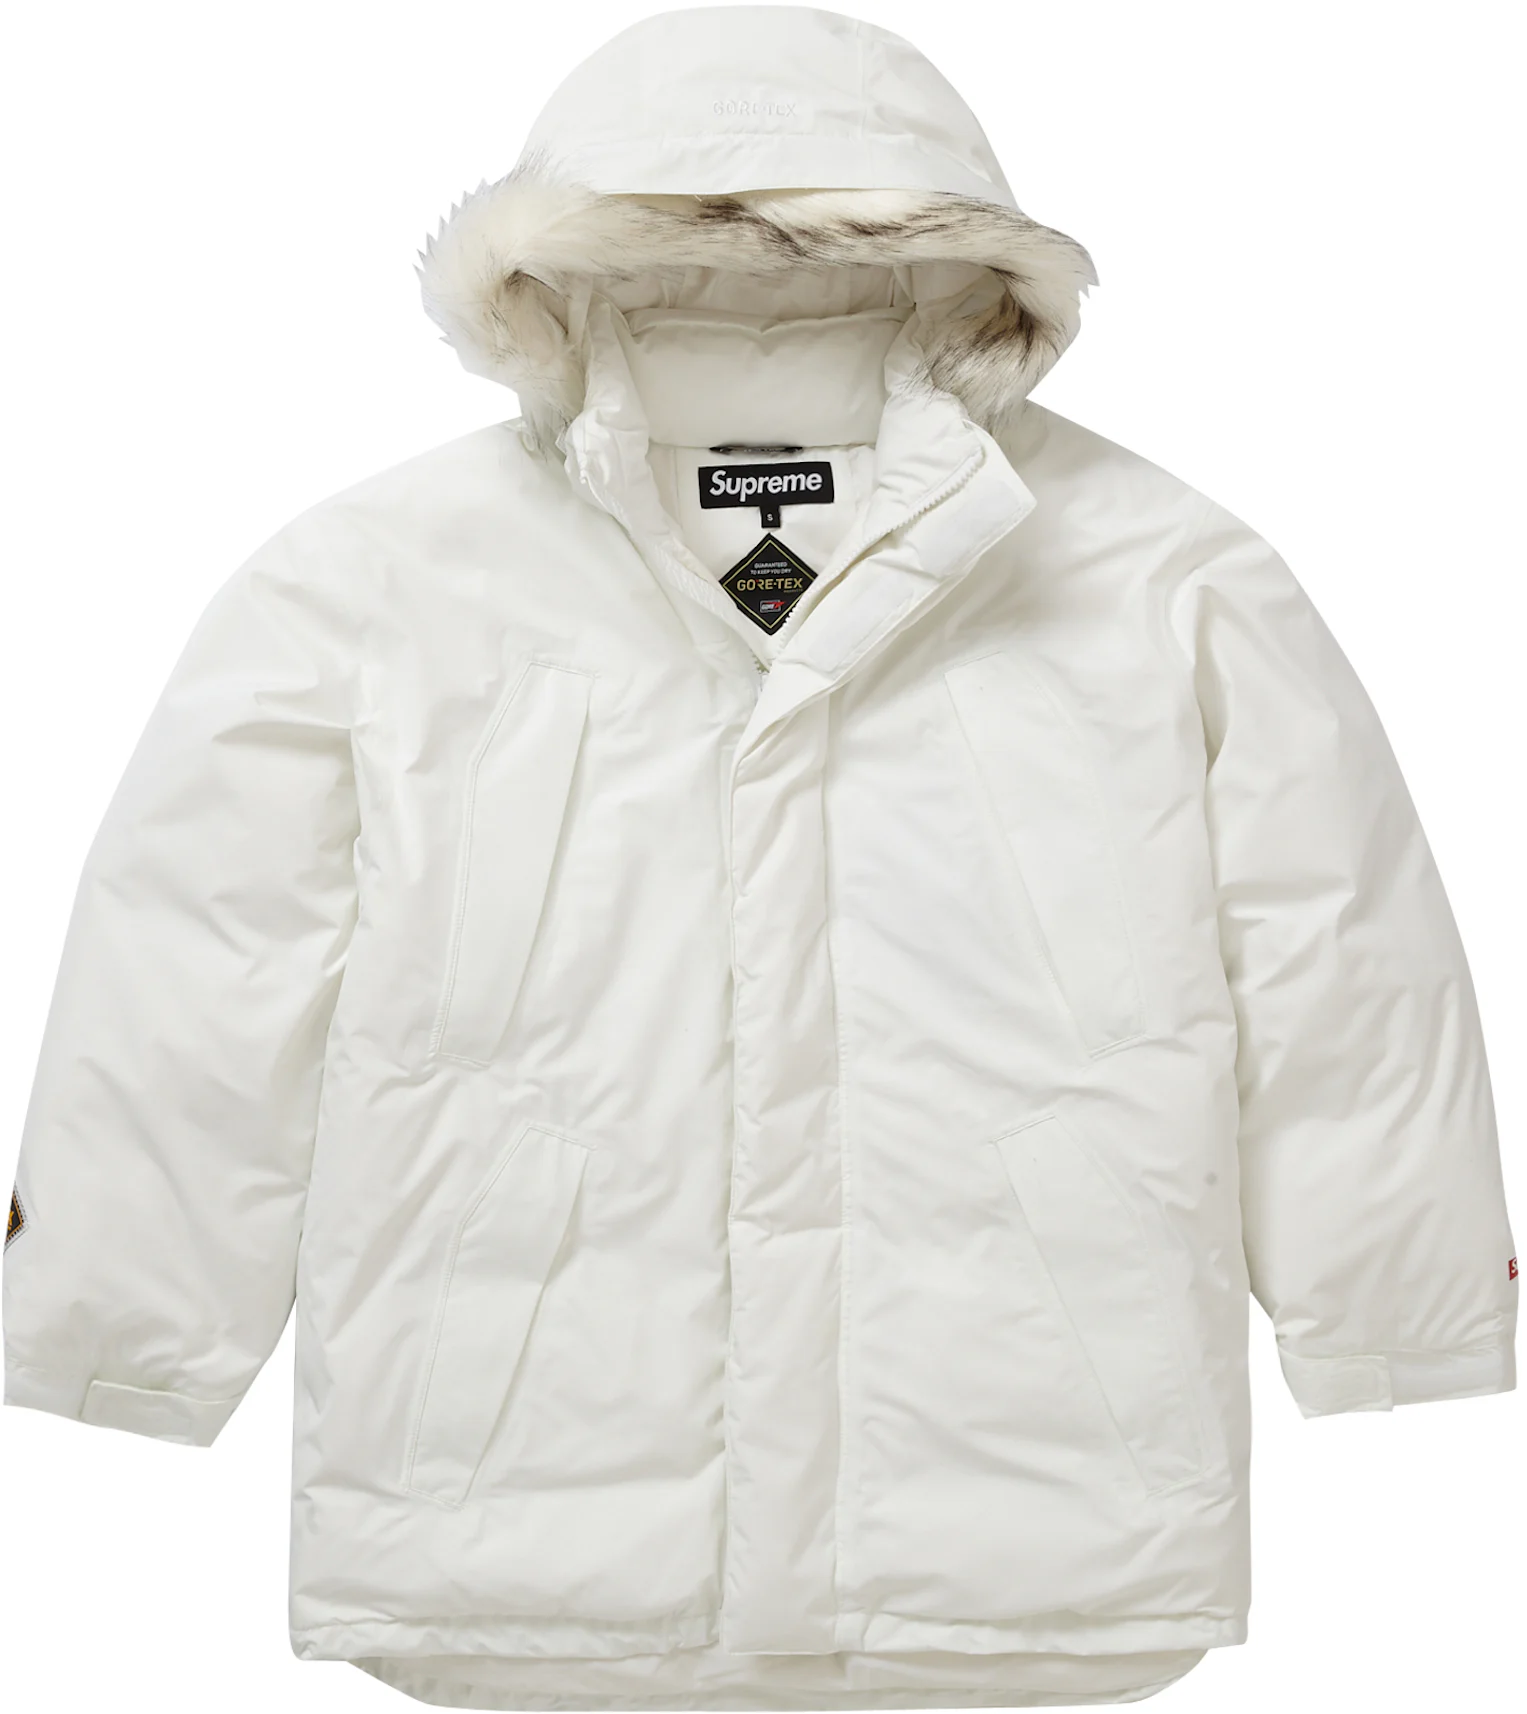 GI Security Police Winter Goretex Jacket - White - Size L - PNA